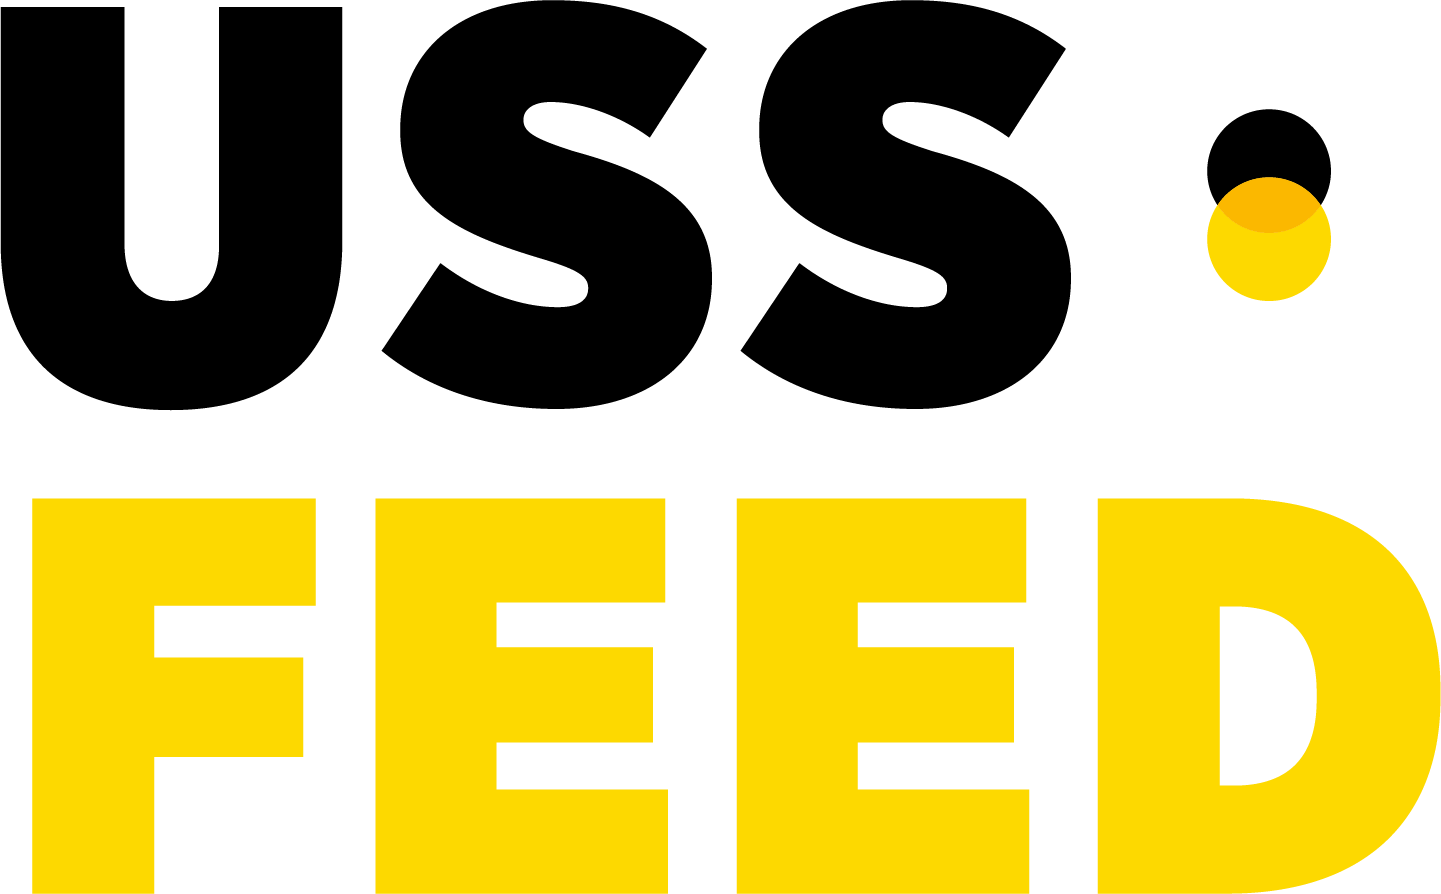 USS feed